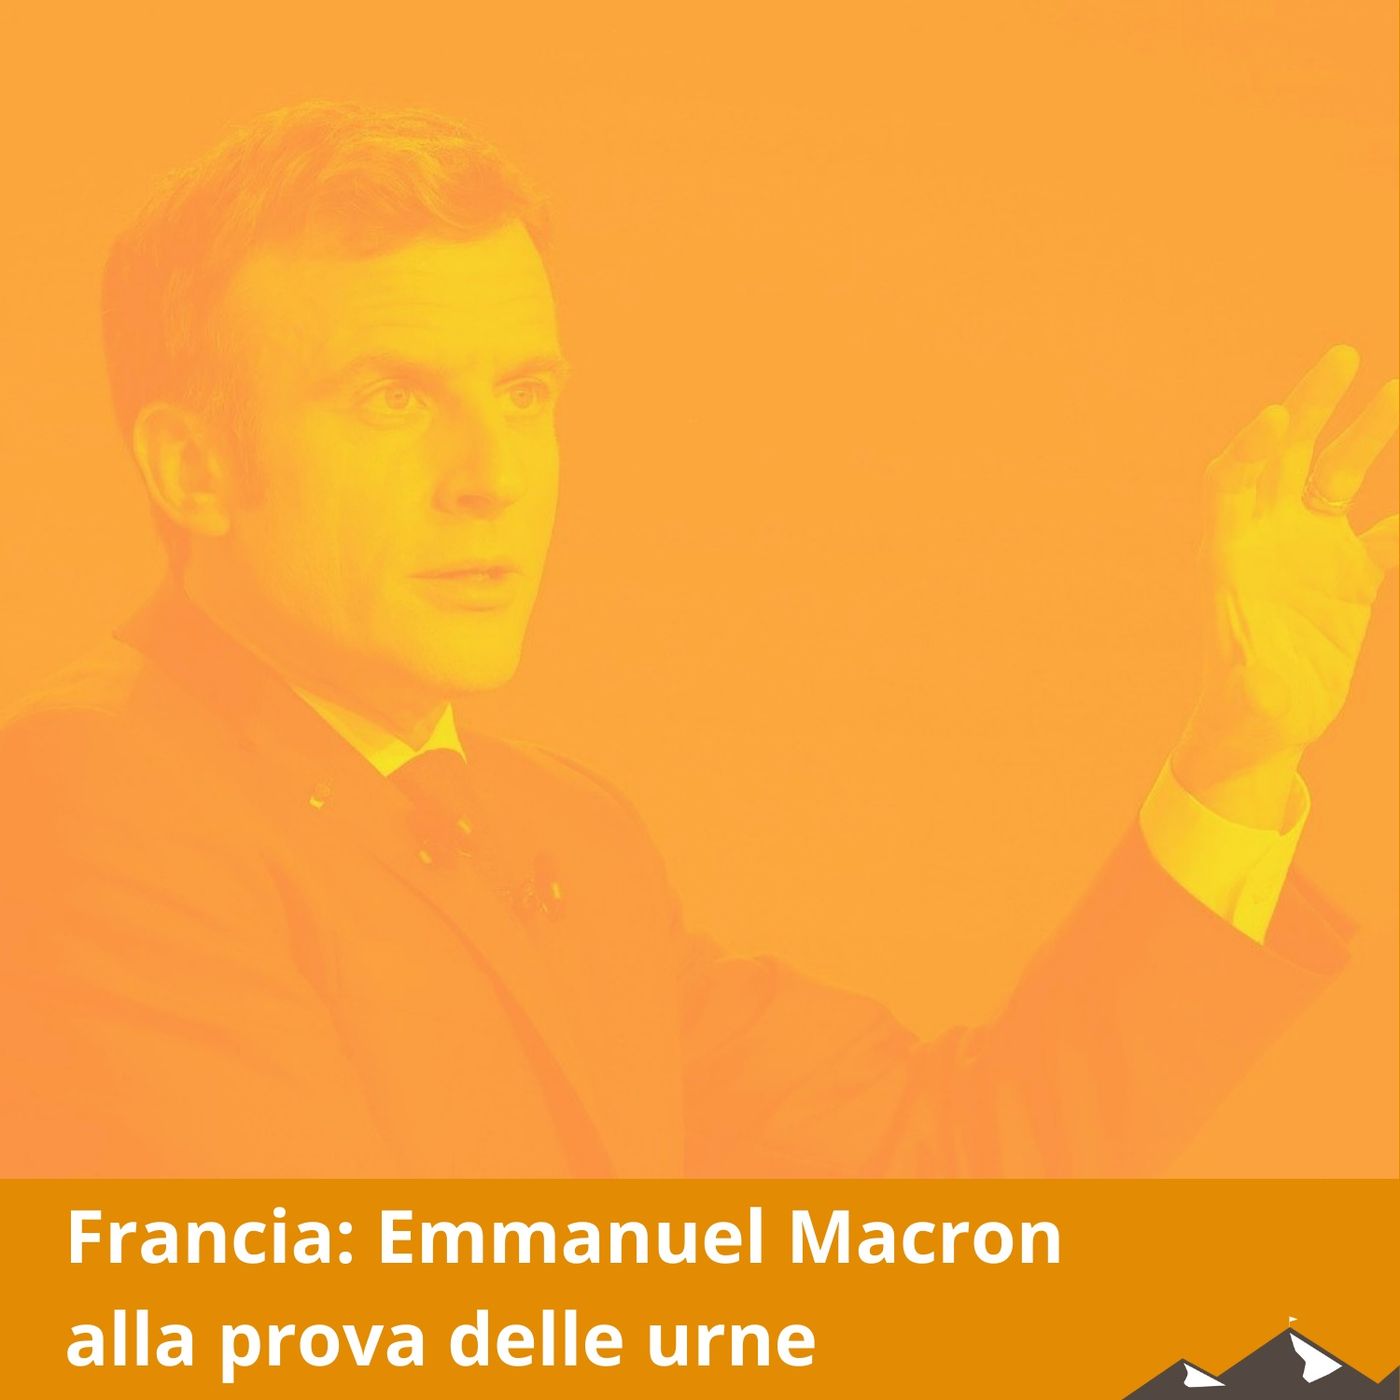 CB - Elezioni in Francia: Macron alla prova delle urne - con Francesco Maselli